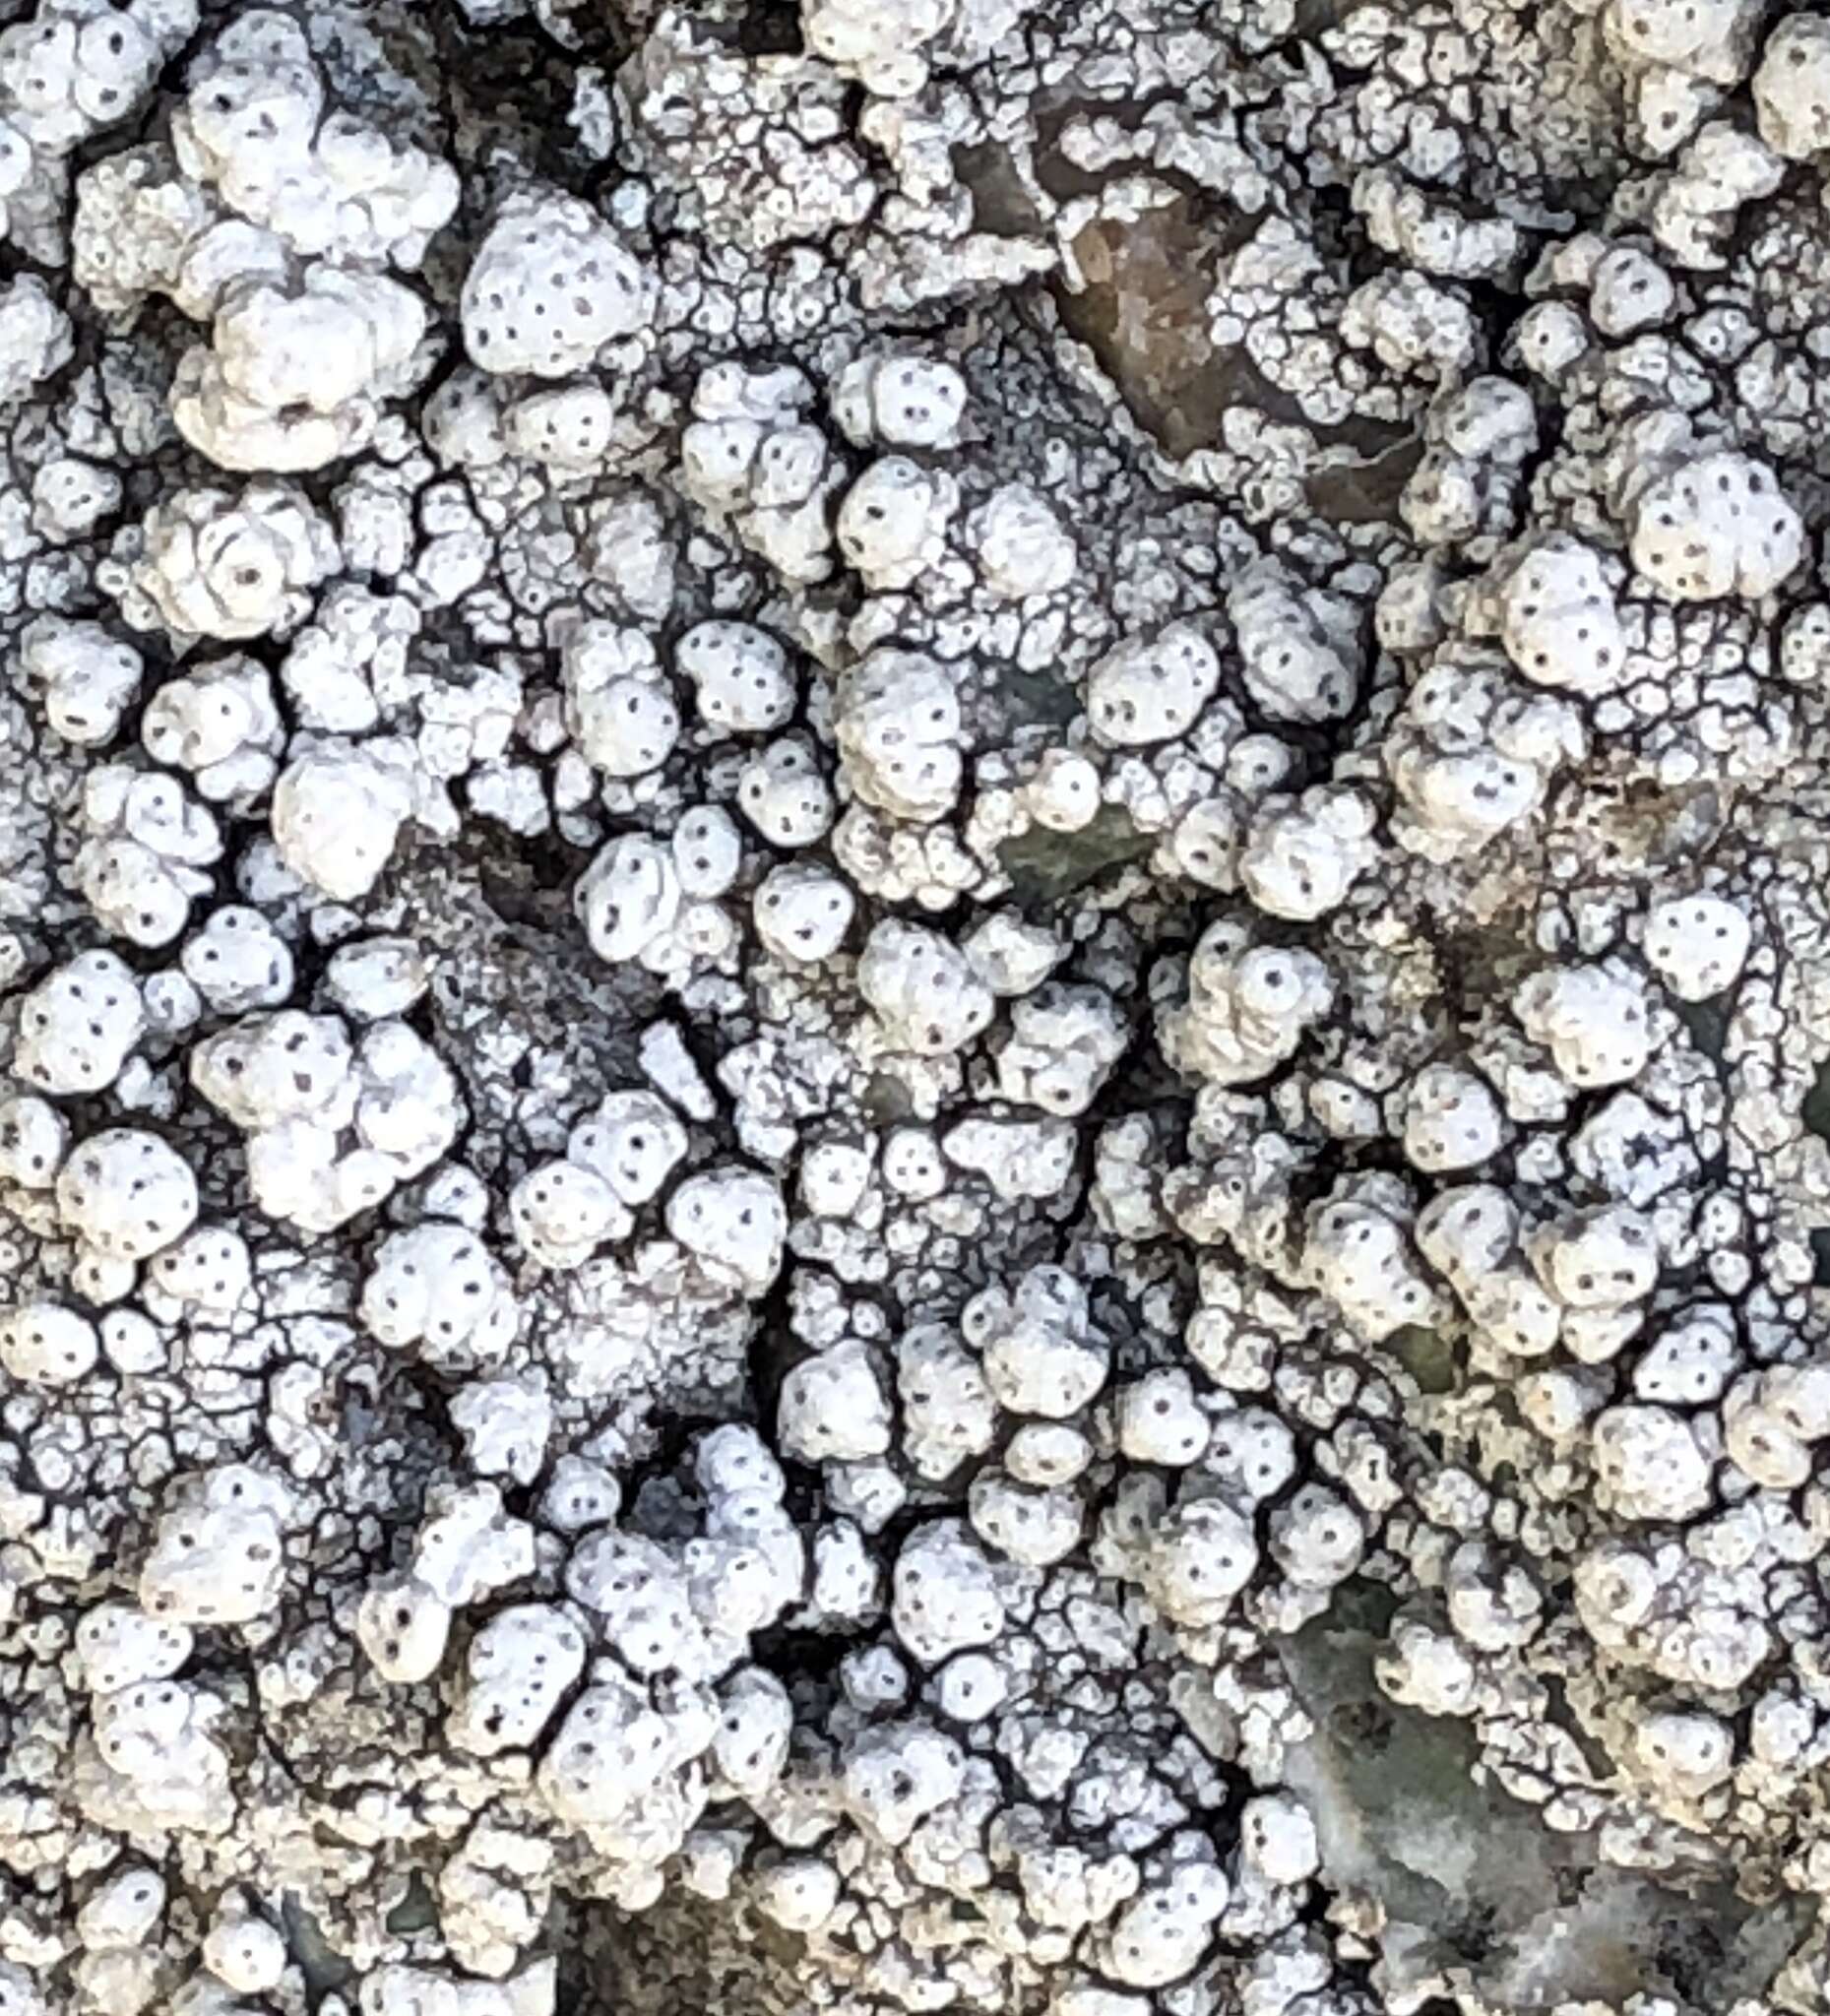 Image of California pore lichen